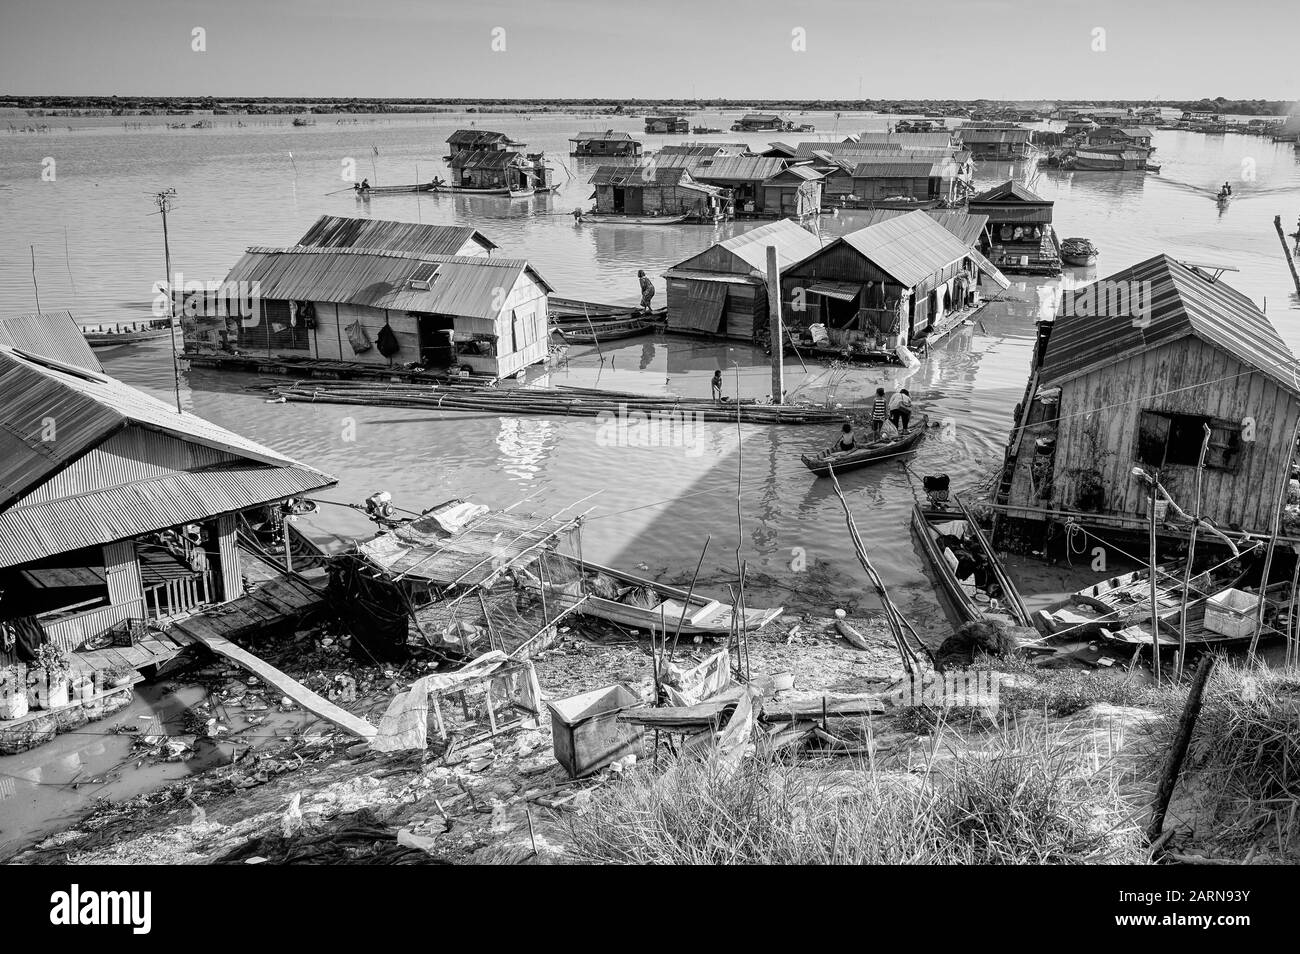 Tonle Sap schwimmende Häuser. Blick auf das schwimmende Fischerdorf in Monochrom Stockfoto